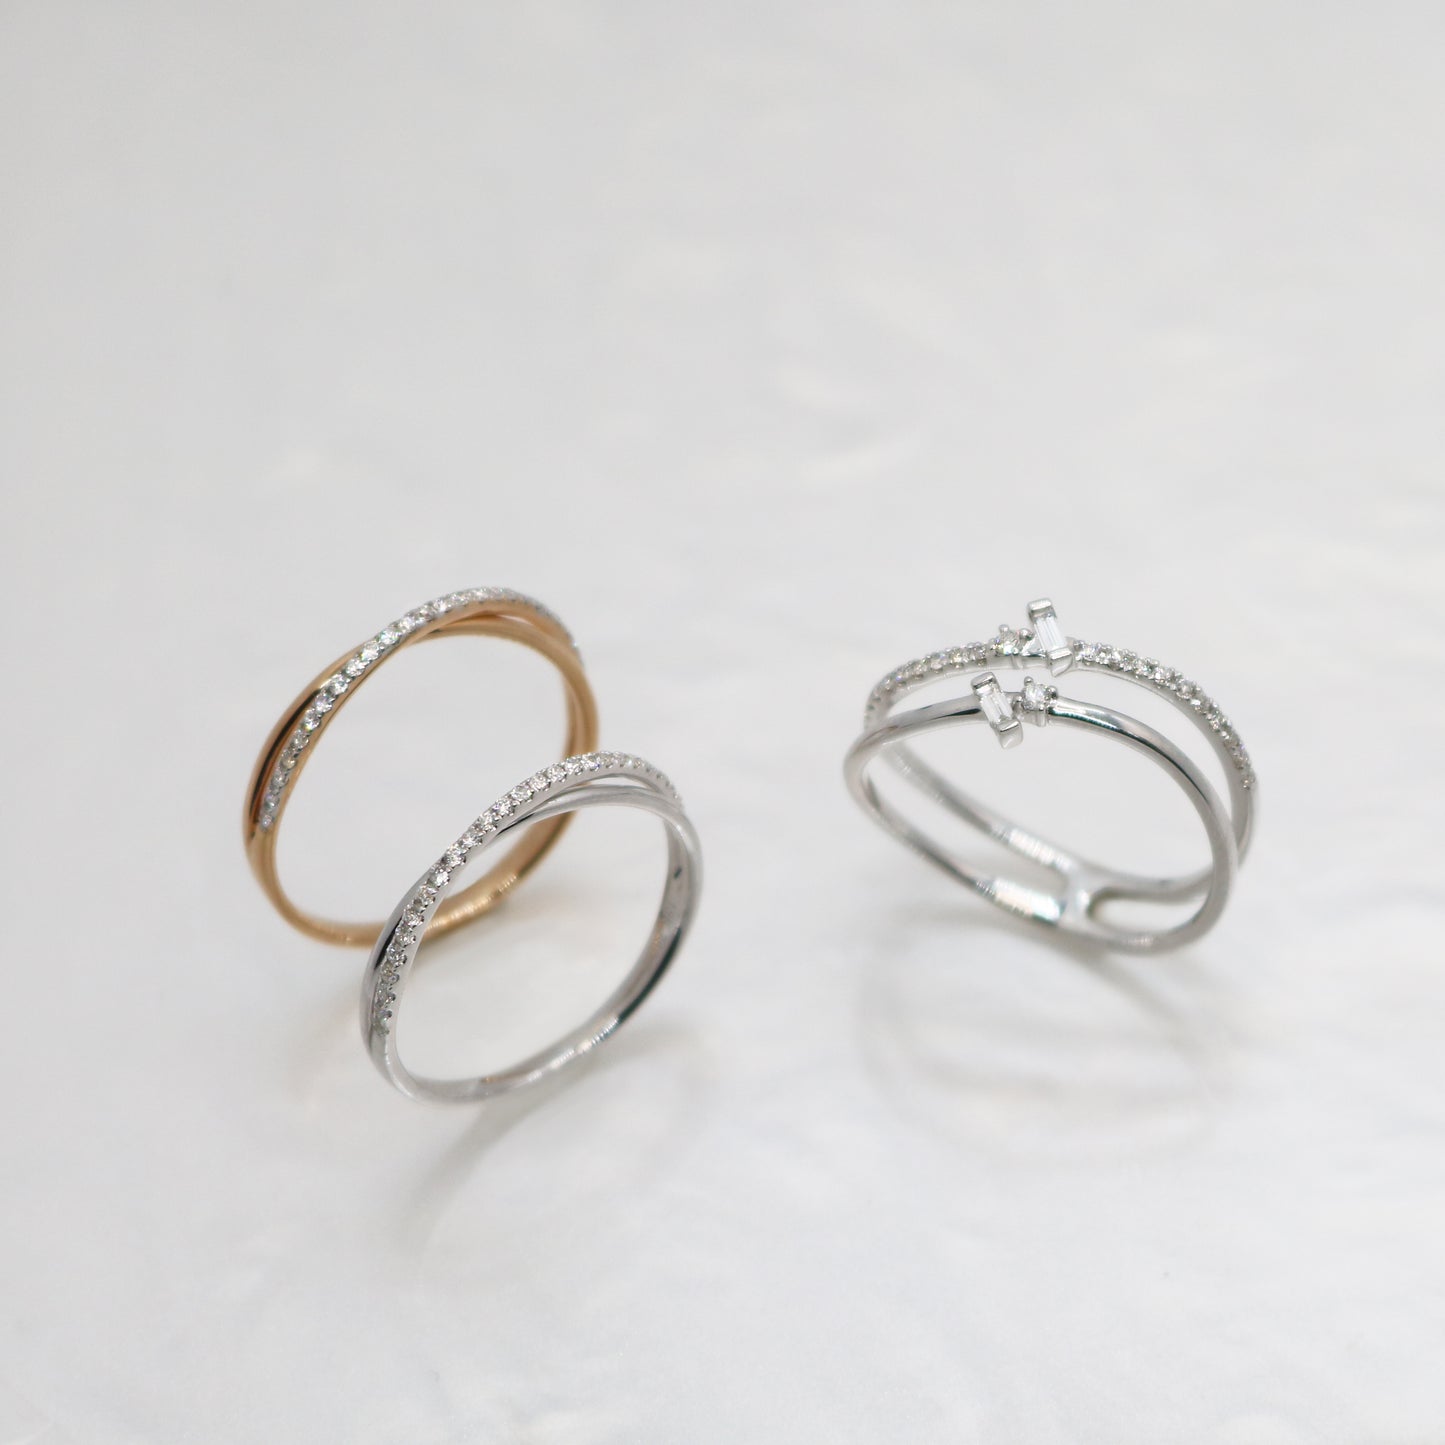 三隻18k玫瑰金交錯鑽石戒指 Three 18k Rose Gold 2-Row Diamond Rings